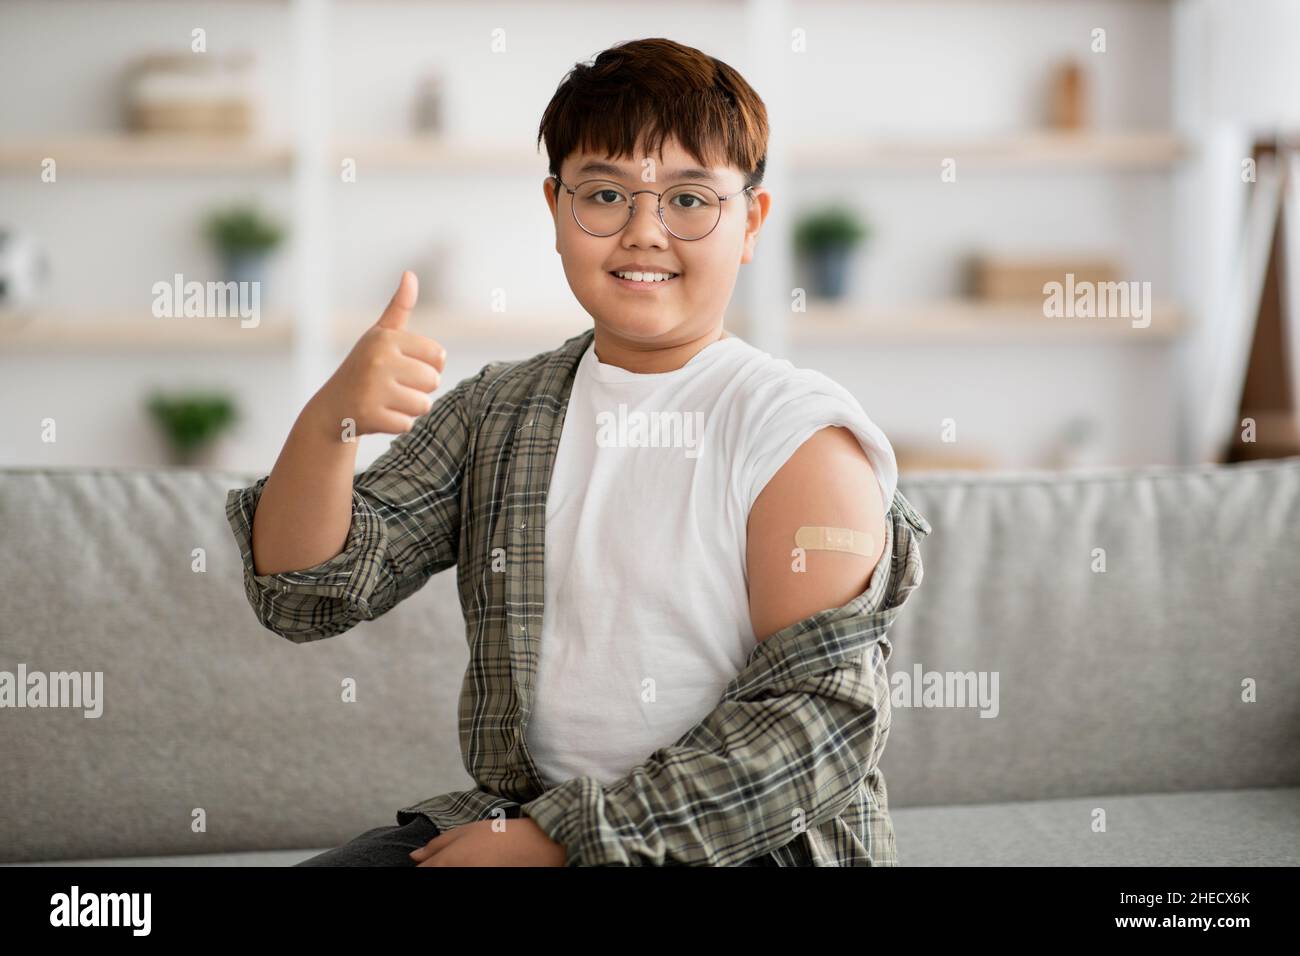 Il bambino coreano è stato vaccinato, mostrando un nastro adesivo sulla spalla Foto Stock